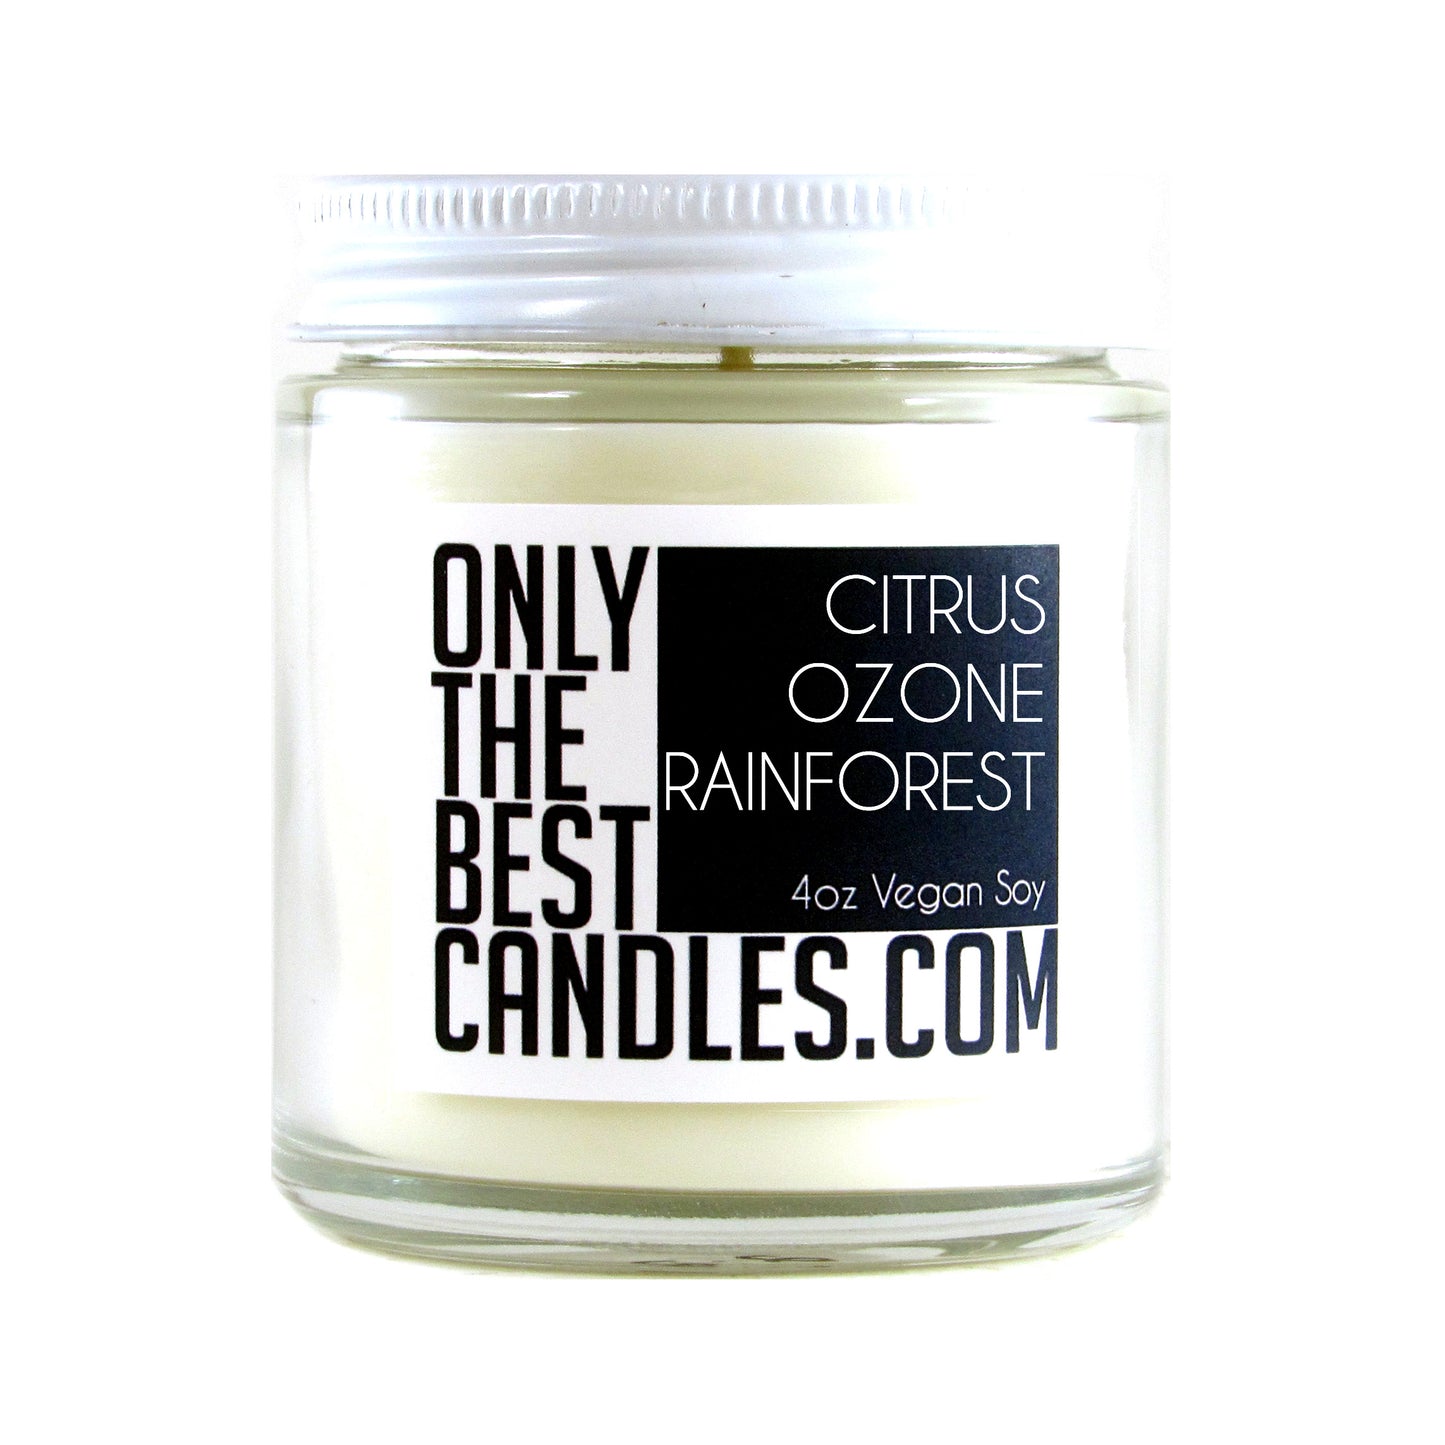 Citrus Ozone Rainforest 4oz Candle